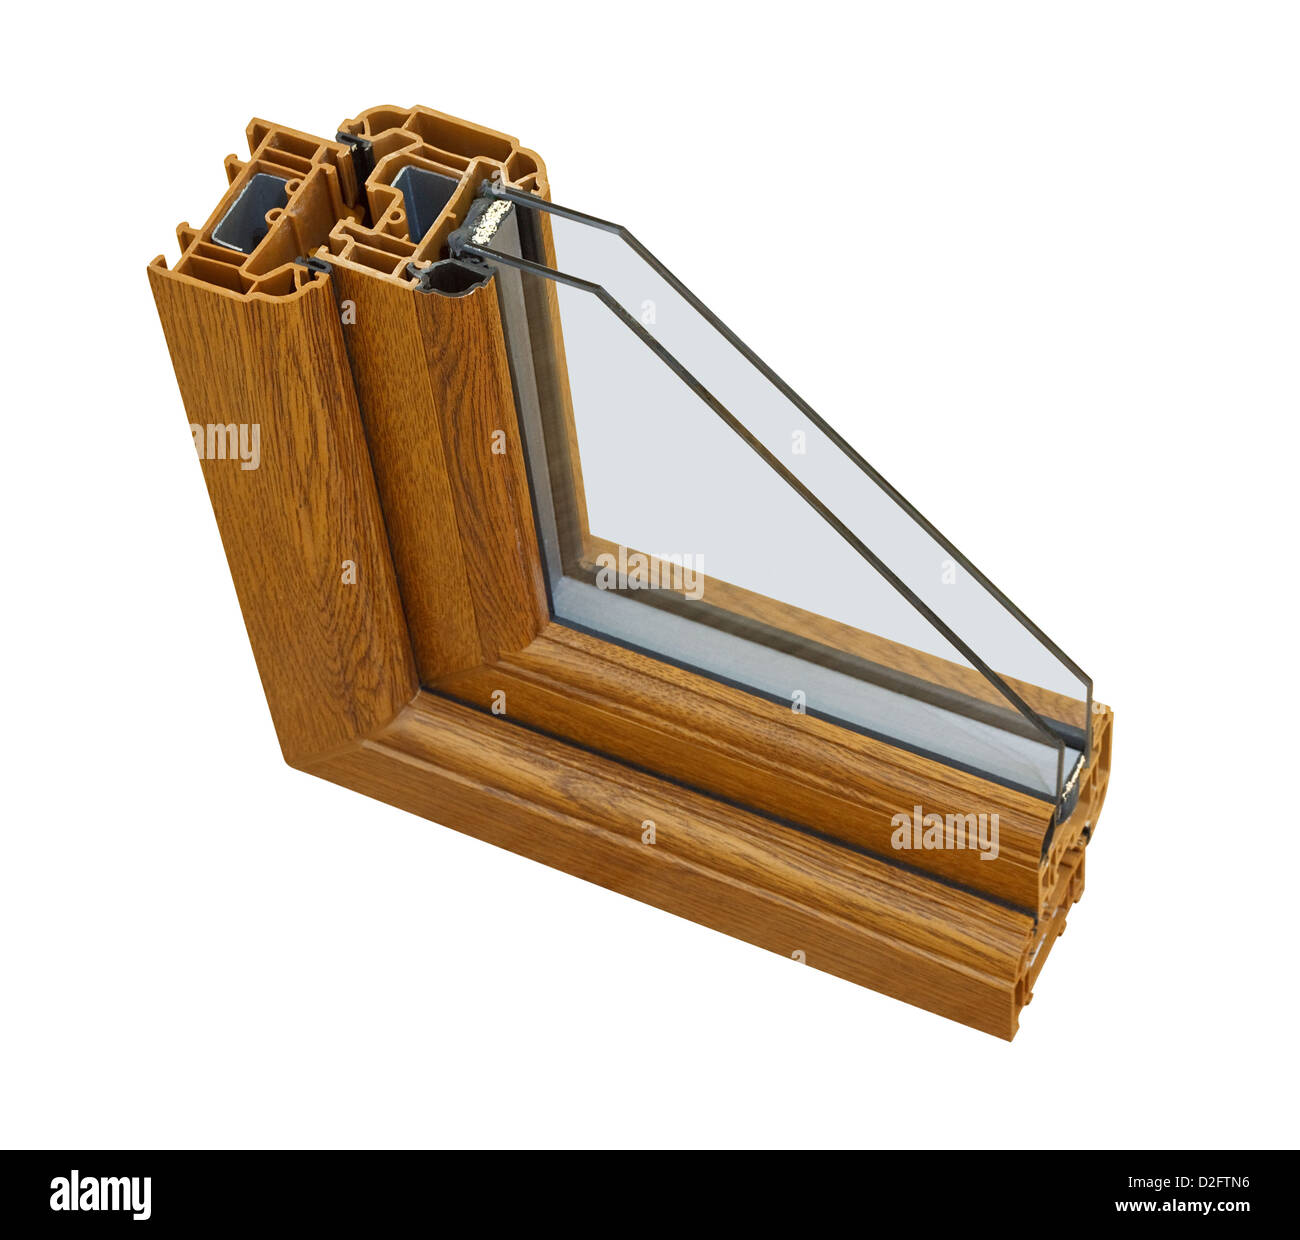 Una sezione trasversale di effetto legno doppi vetri asportate per mostrare il profilo interno e la qualità di costruzione Foto Stock